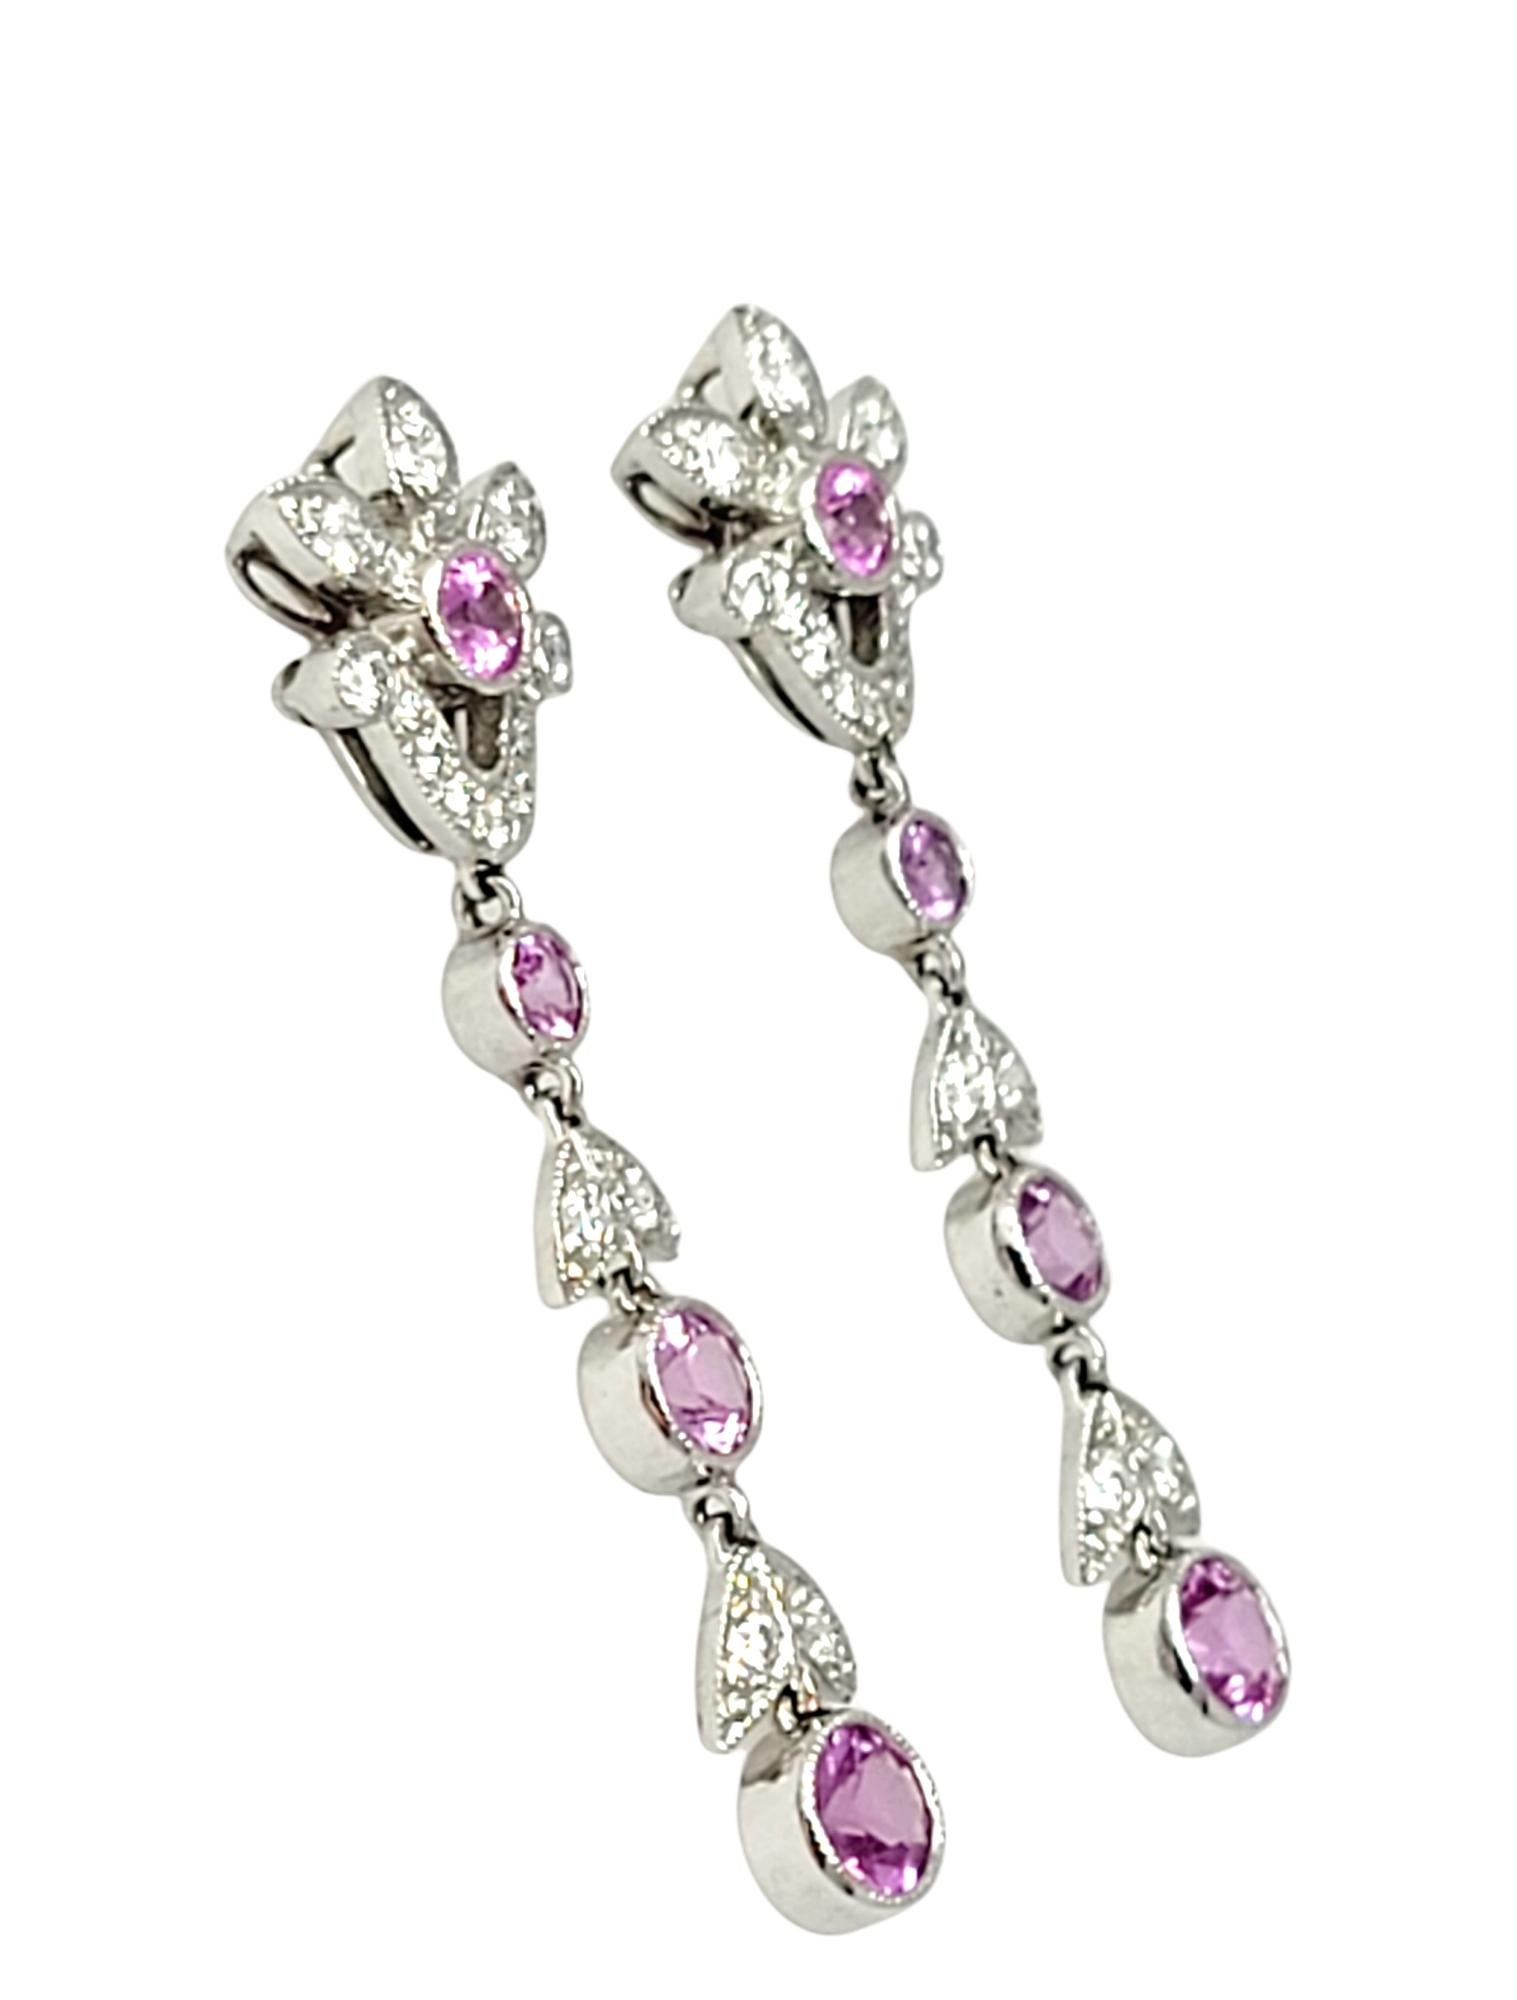 Superbes boucles d'oreilles pendantes en saphir rose naturel et diamant de Tiffany & Co. Ces boucles d'oreilles élégantes et romantiques sont ornées d'un motif floral embelli et d'un motif en relief. Le mouvement doux attrape la lumière et scintille